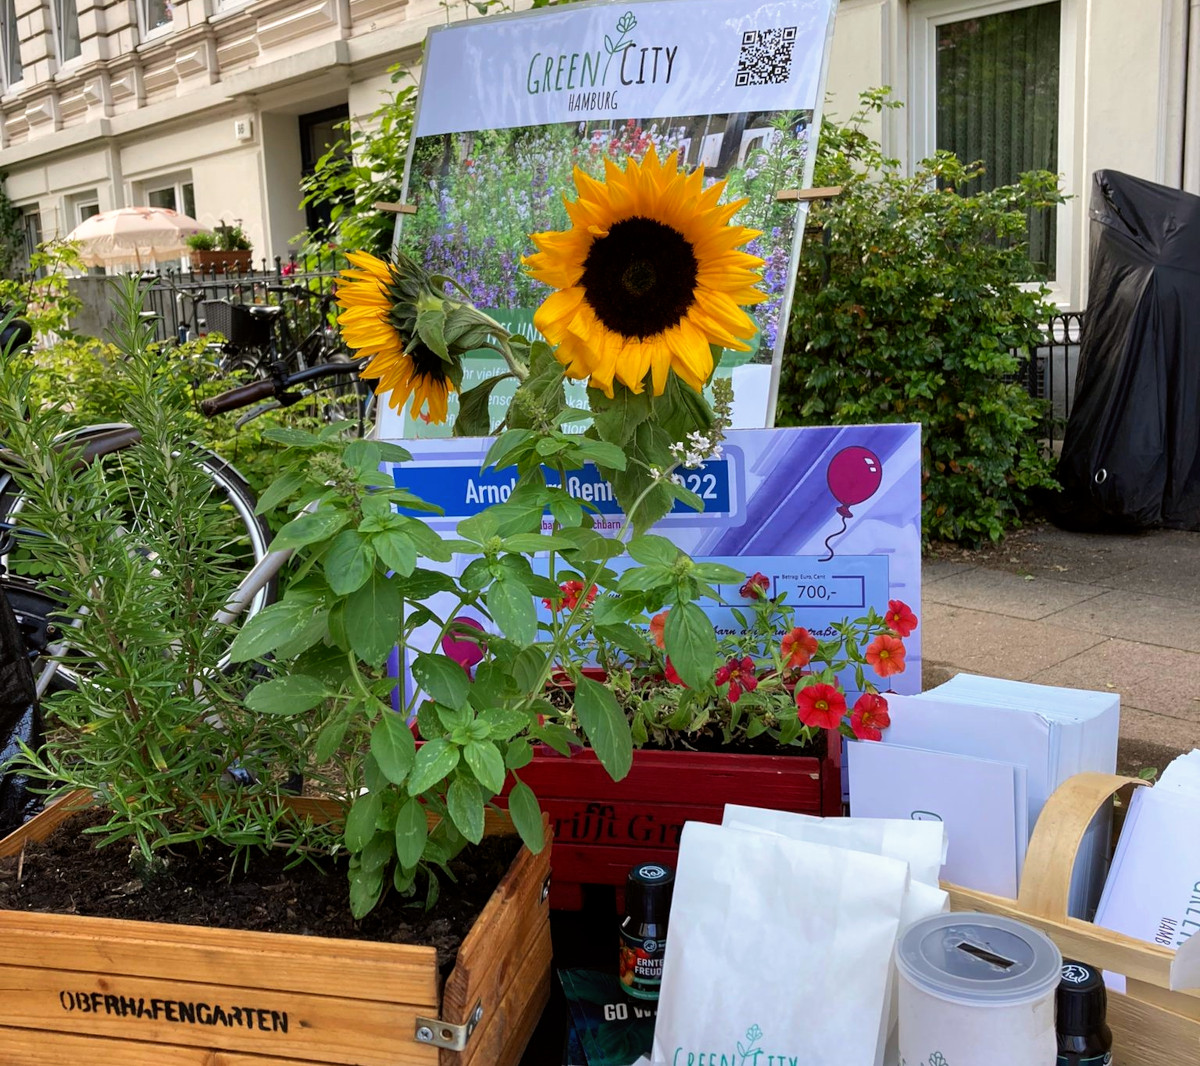 Ein Stand des Vereins Green City Hamburg. Zu sehen sind verschiedene Pflanzen, unter anderem zwei Sonnenblumen, Saattütchen und ein Plakat mit dem Namen.